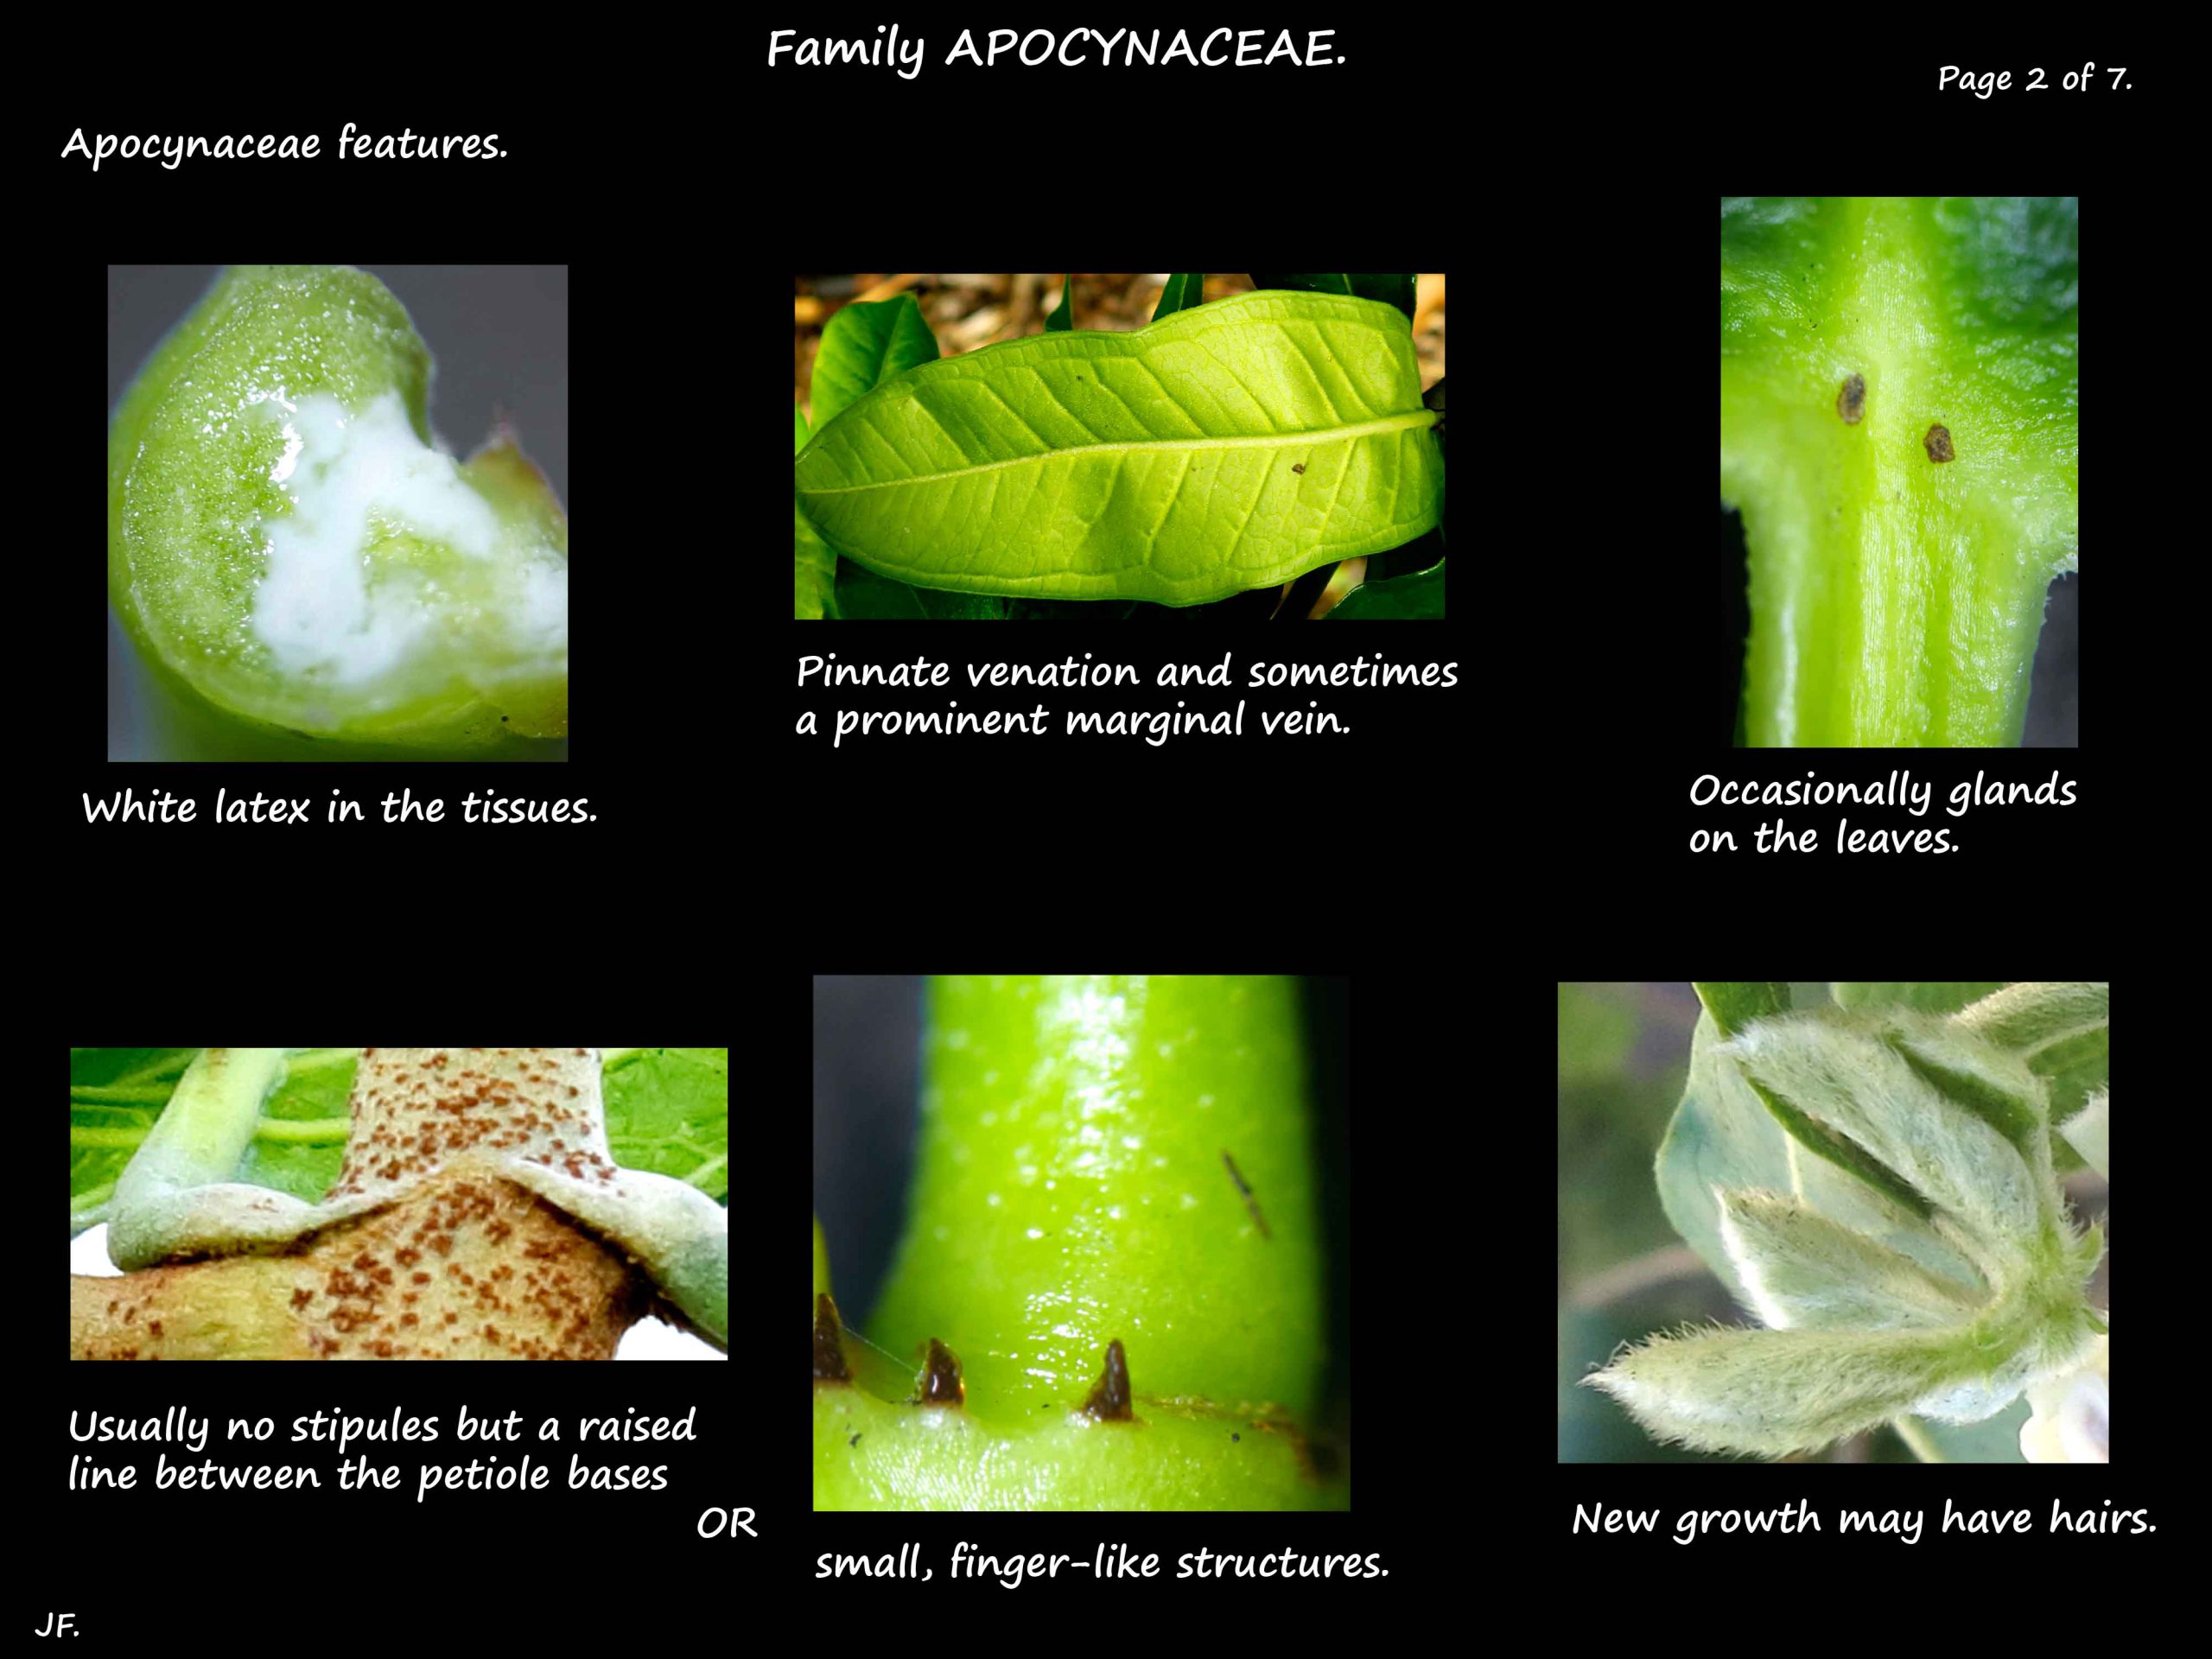 2 Apocynaceae leaf glands